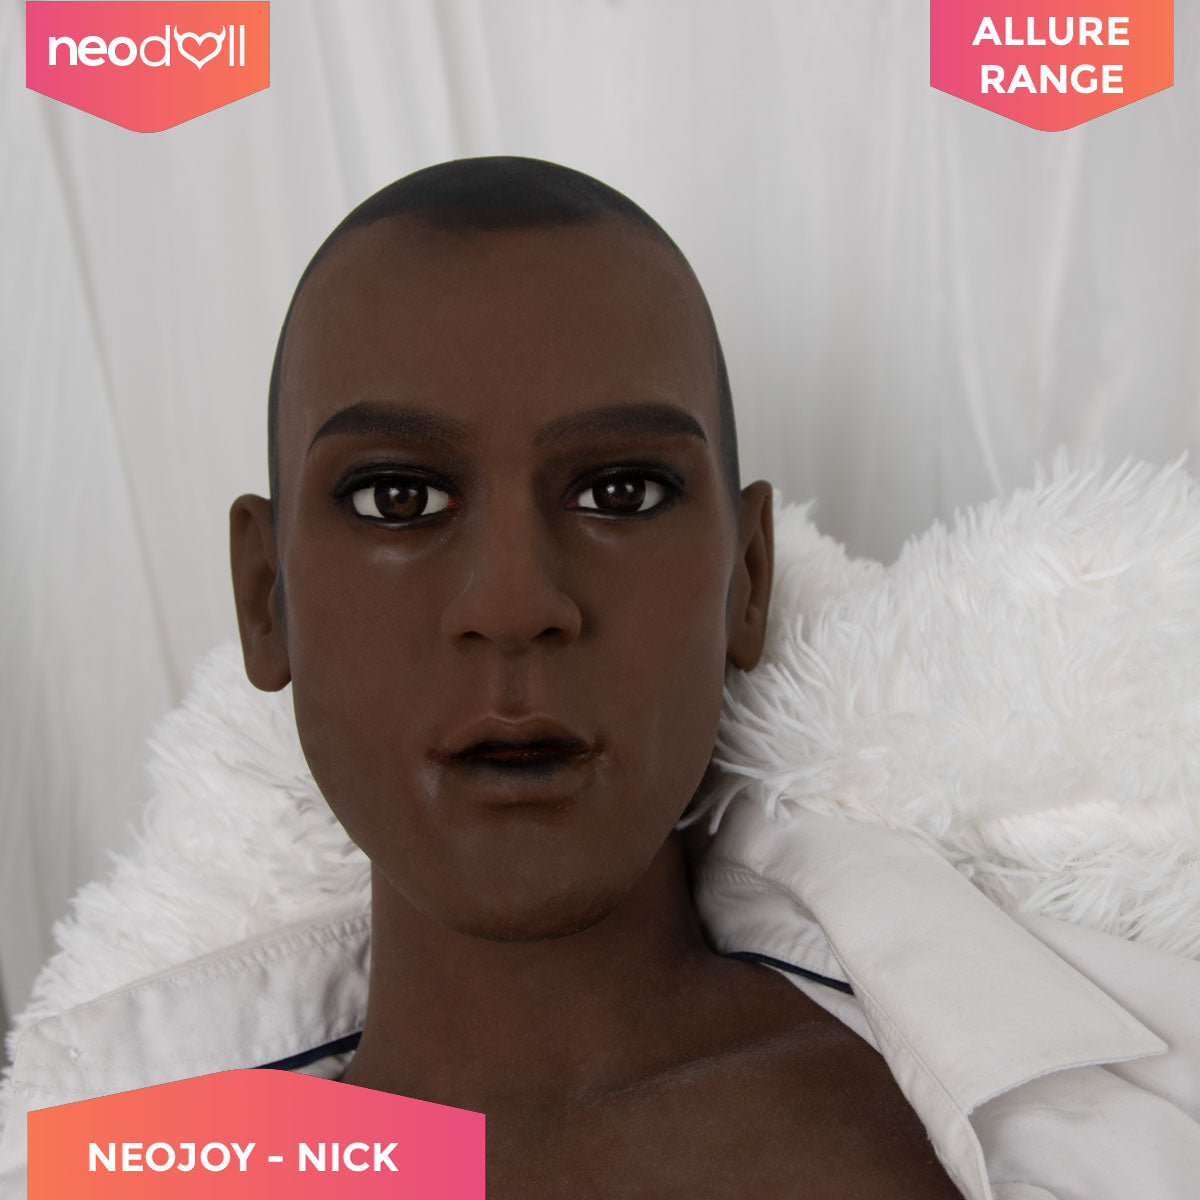 Neodoll Allure - Nick Head With Male Sex Doll Torso - Black - 17cm Dildo